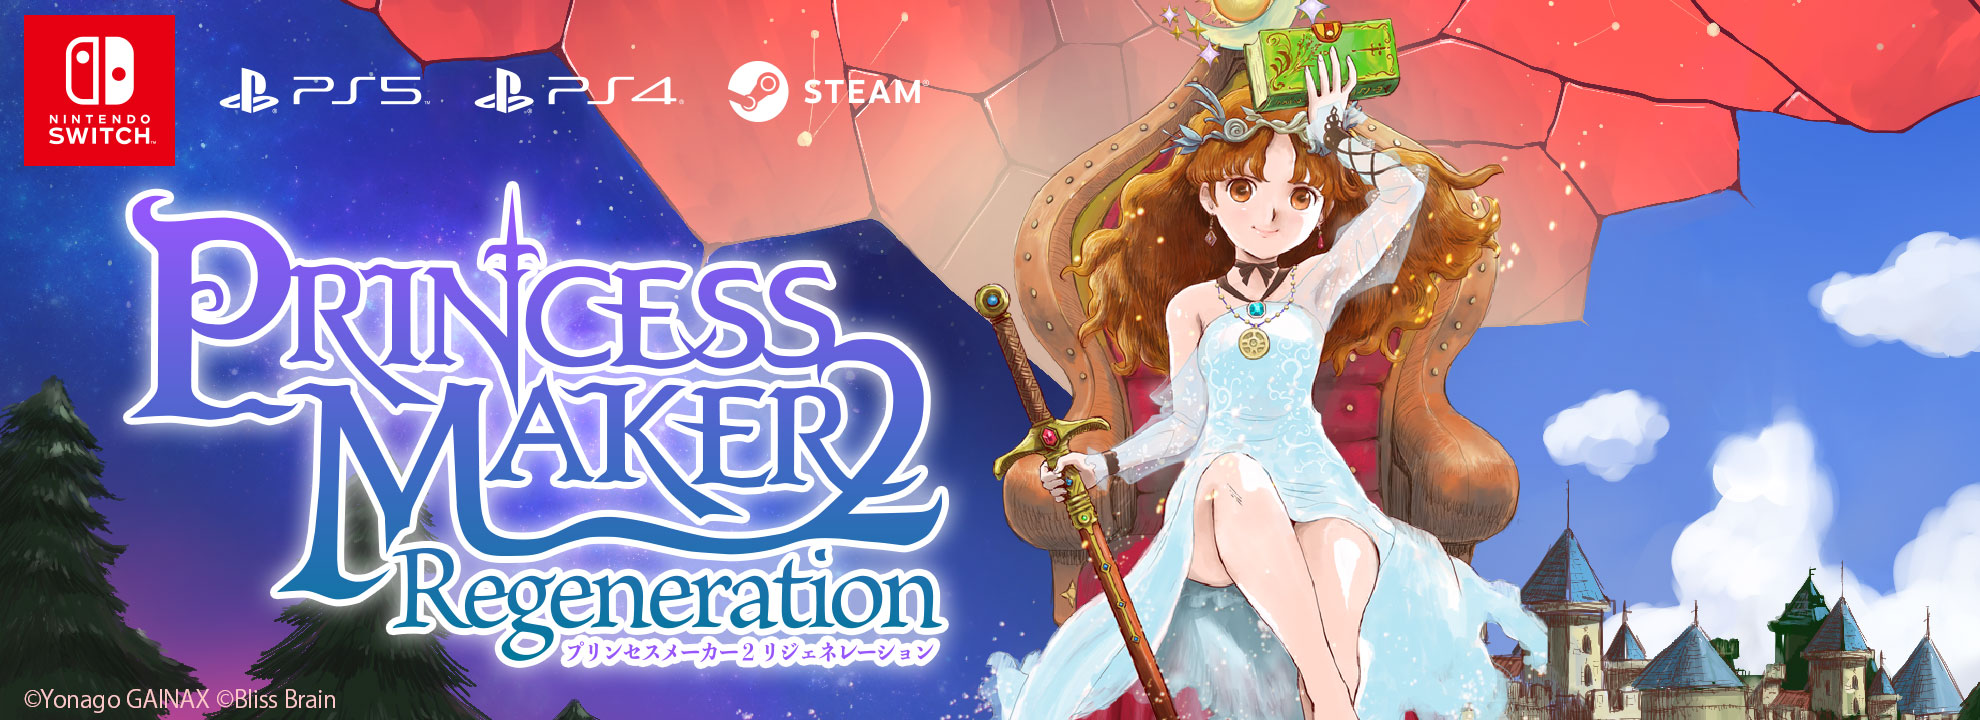 プリンセスメーカー２ リジェネレーション
Princess Maker 2 Regeneration